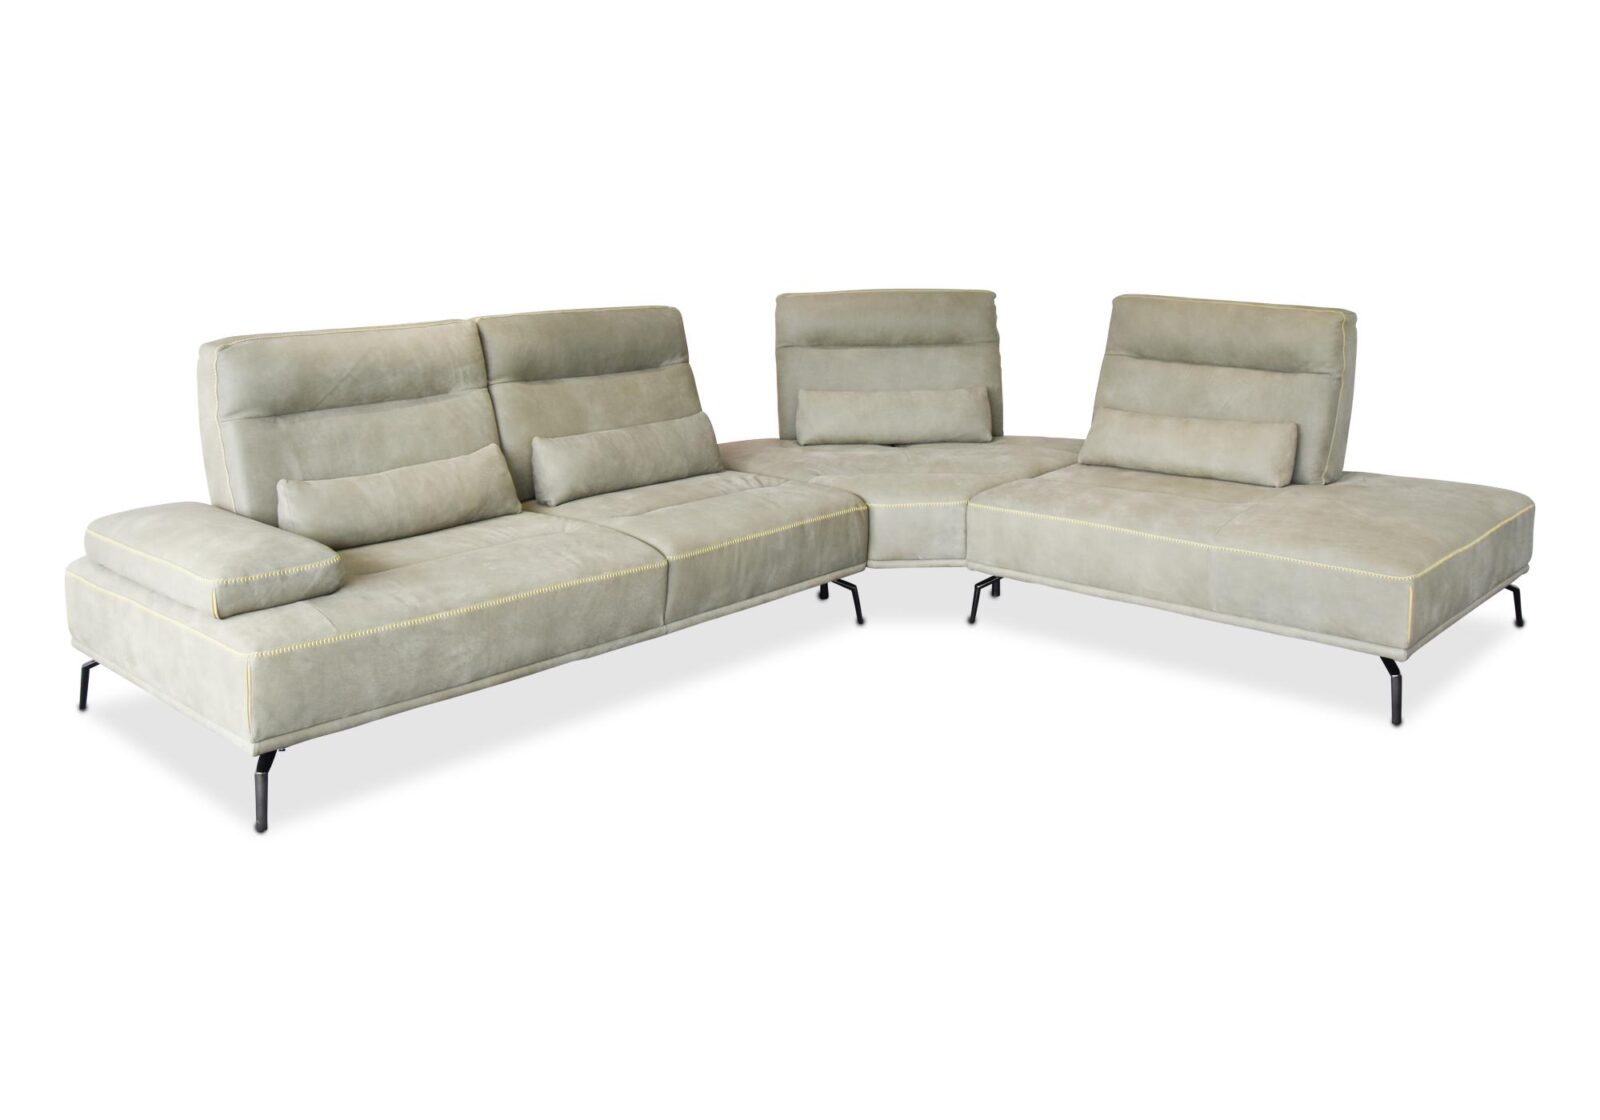 Ecksofa Benz  3er Sofa mit Armlehne. Material: Leder. Farbe: Grün. Erhältlich bei Möbel Gallati.